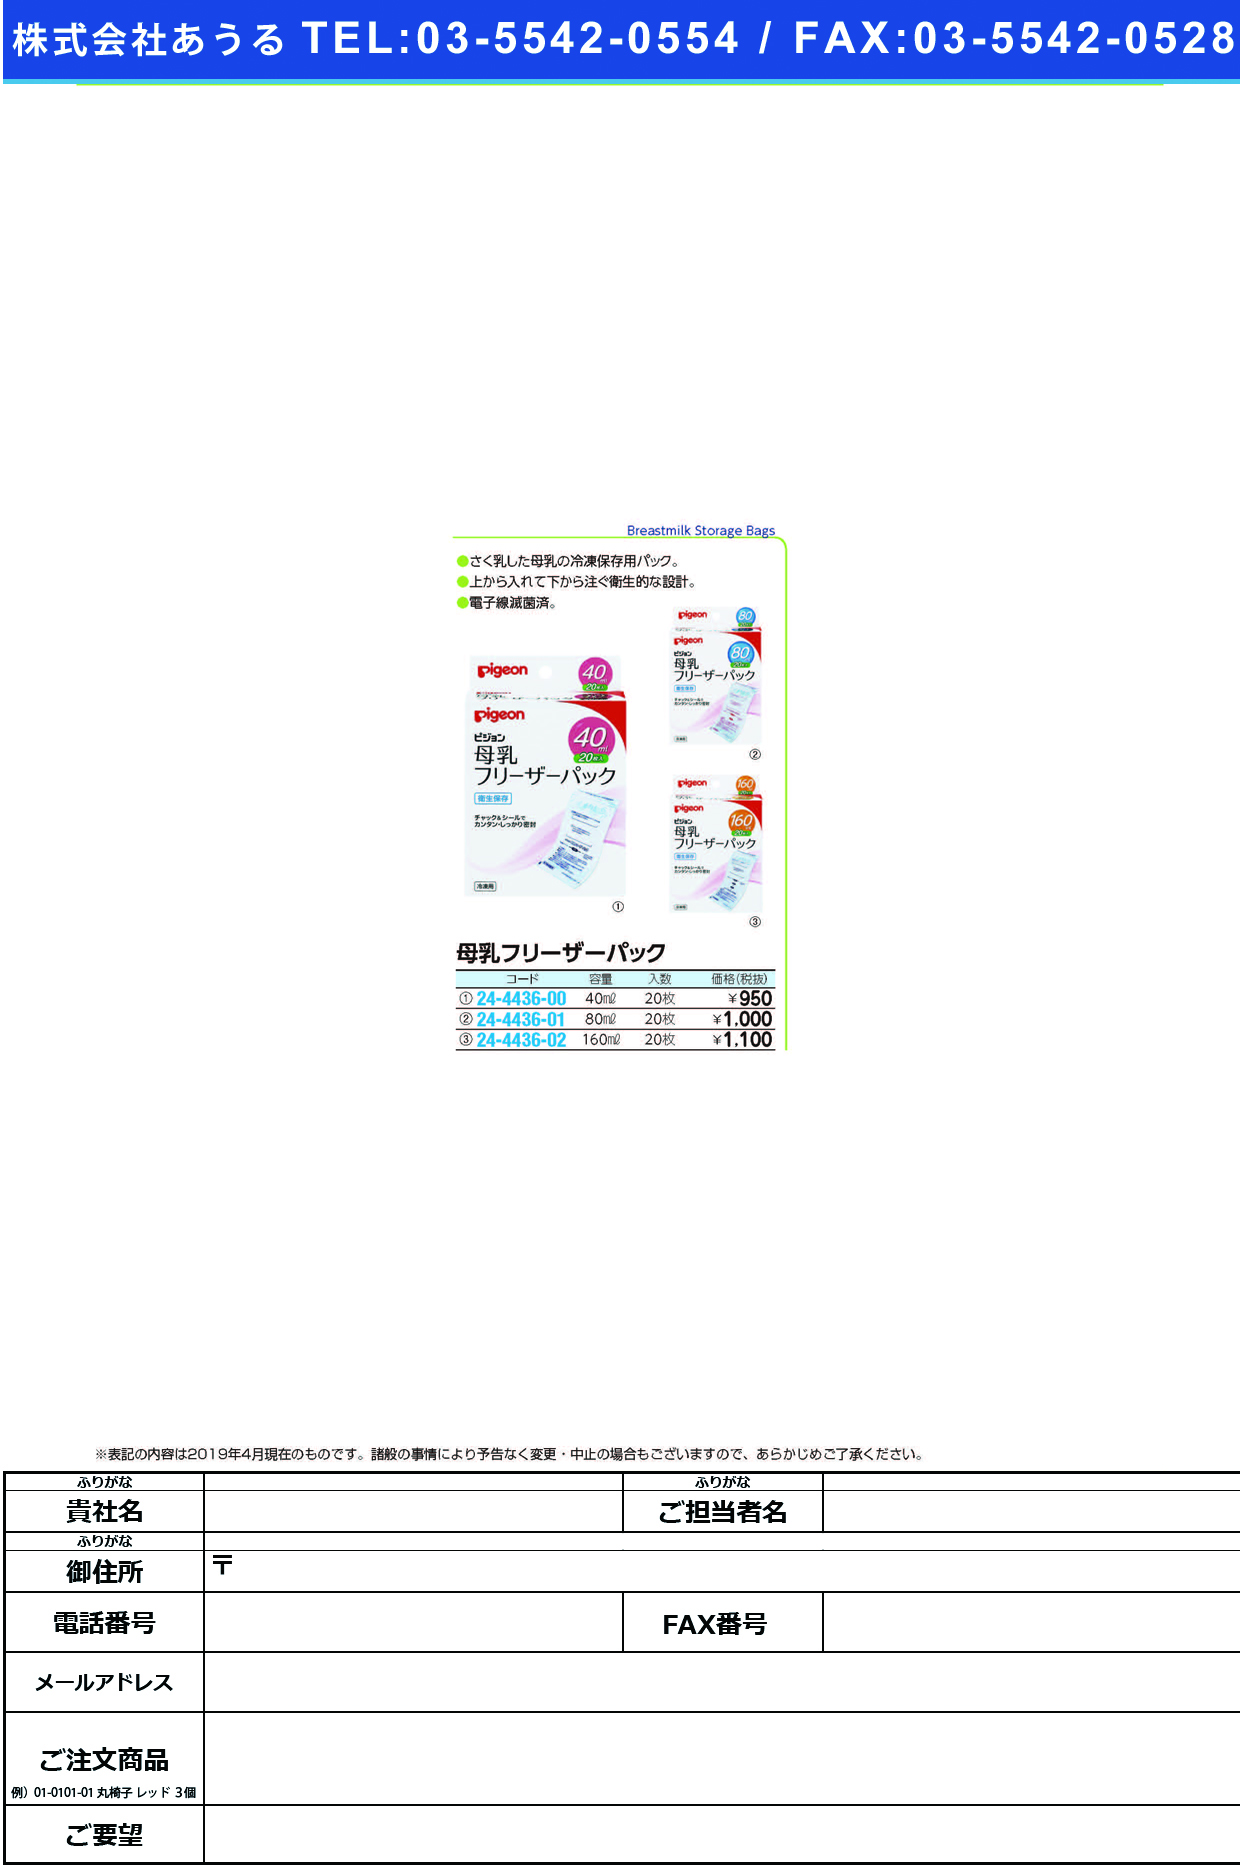 (24-4436-02)母乳フリーザーパック 16264(160ML)20ﾏｲｲﾘ ﾎﾞﾆｭｳｳﾘｰｻﾞｰﾊﾟｯｸ(ピジョン)【1個単位】【2019年カタログ商品】